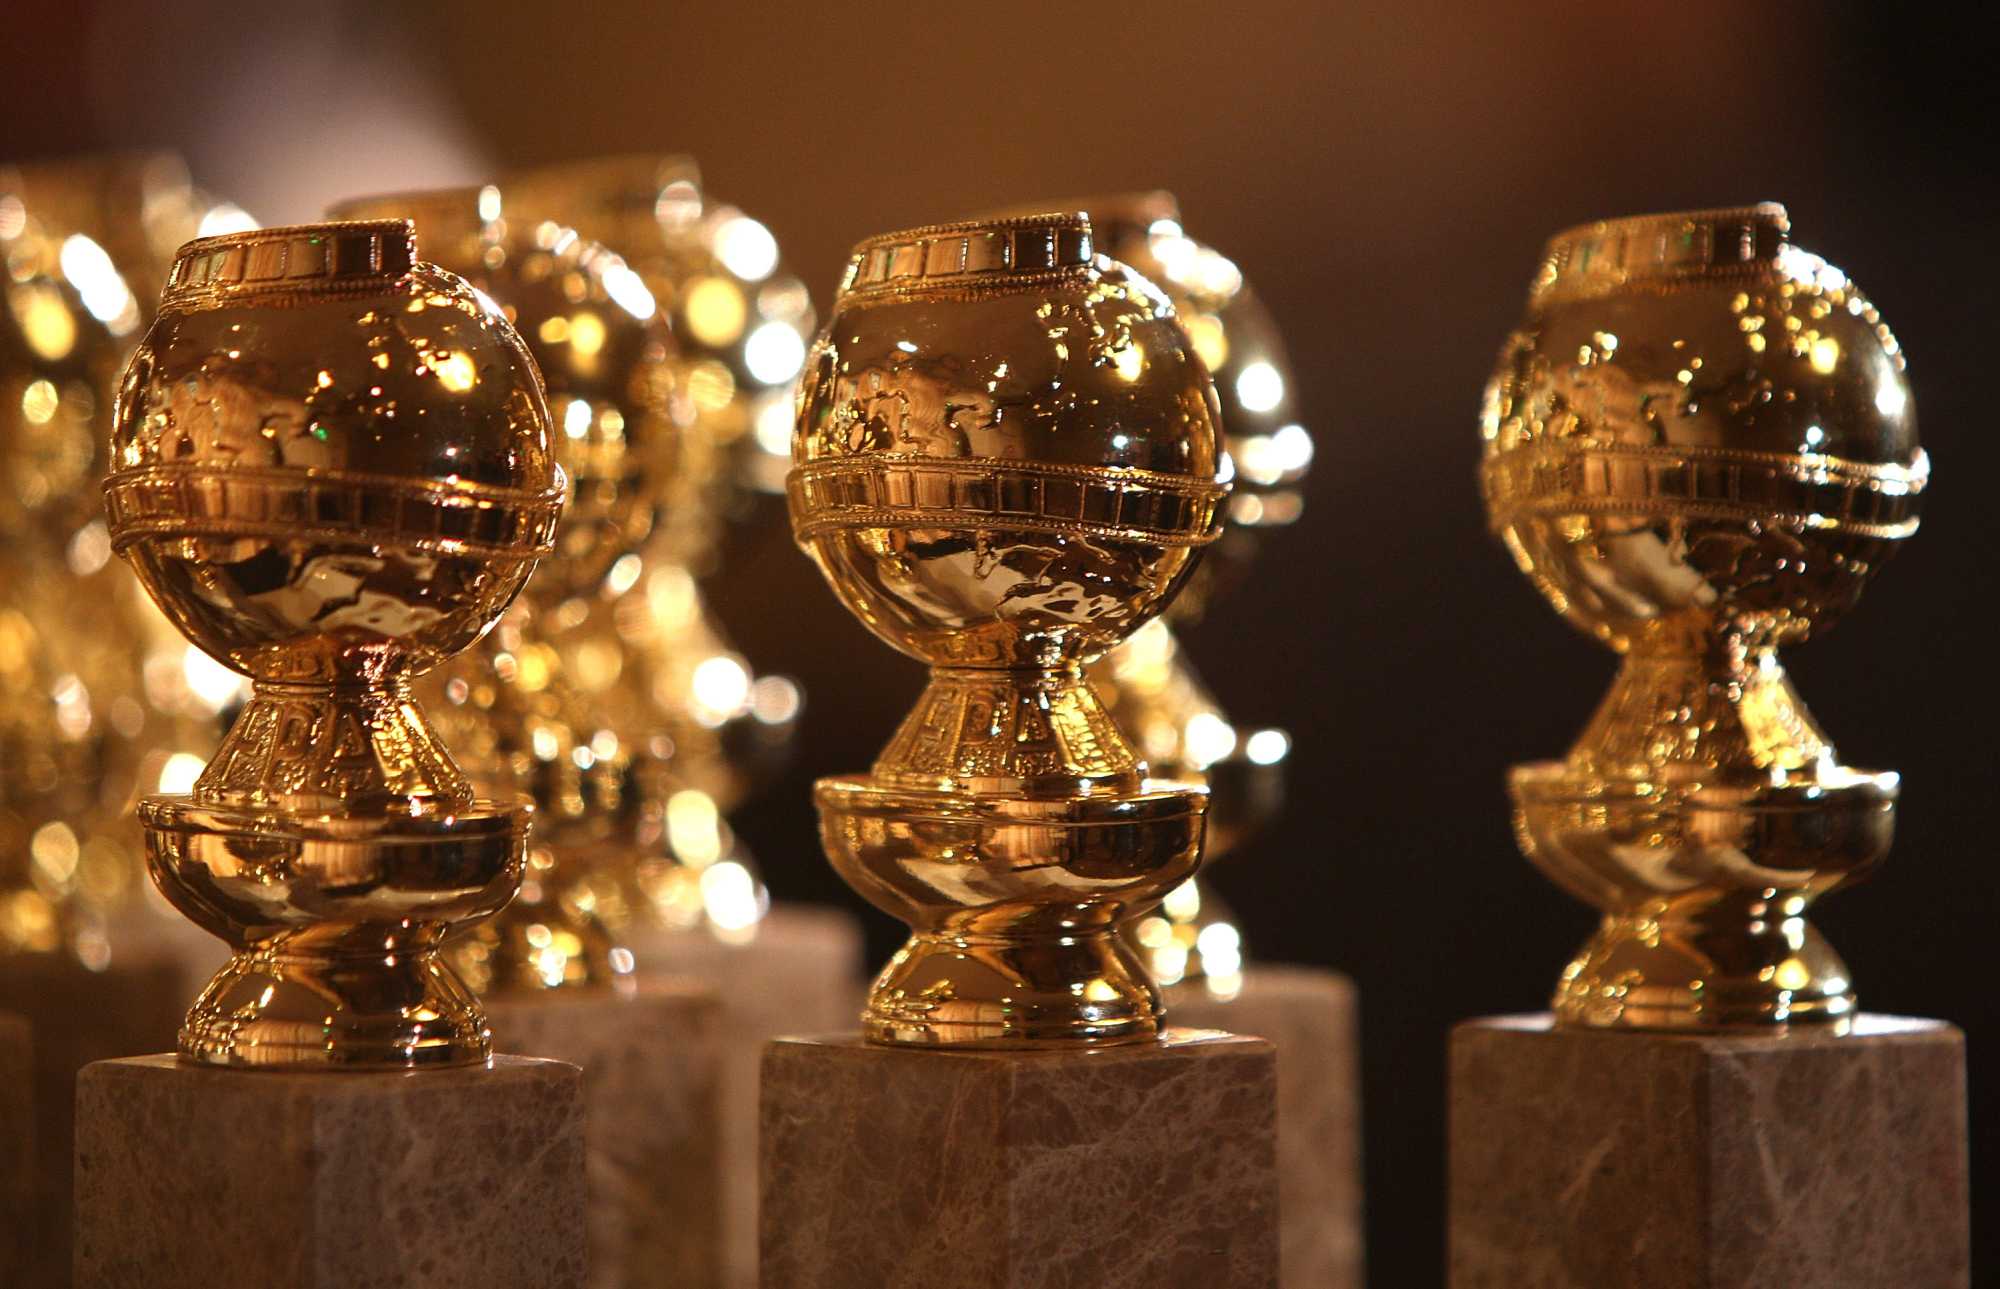 Golden Globes 2019, ecco tutte le nomination!